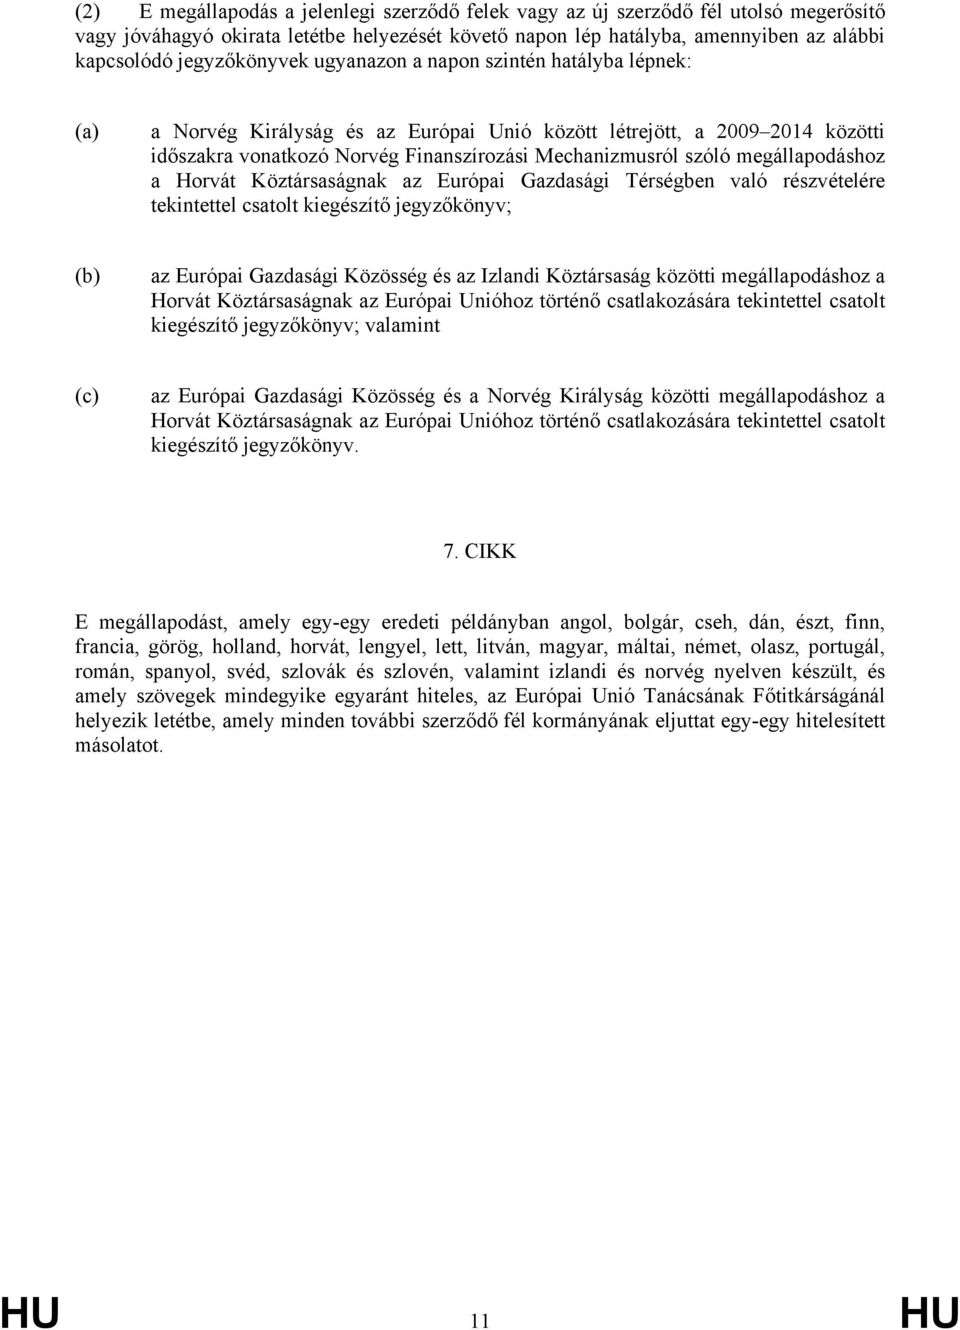 megállapodáshoz a Horvát Köztársaságnak az Európai Gazdasági Térségben való részvételére tekintettel csatolt kiegészítő jegyzőkönyv; (b) az Európai Gazdasági Közösség és az Izlandi Köztársaság